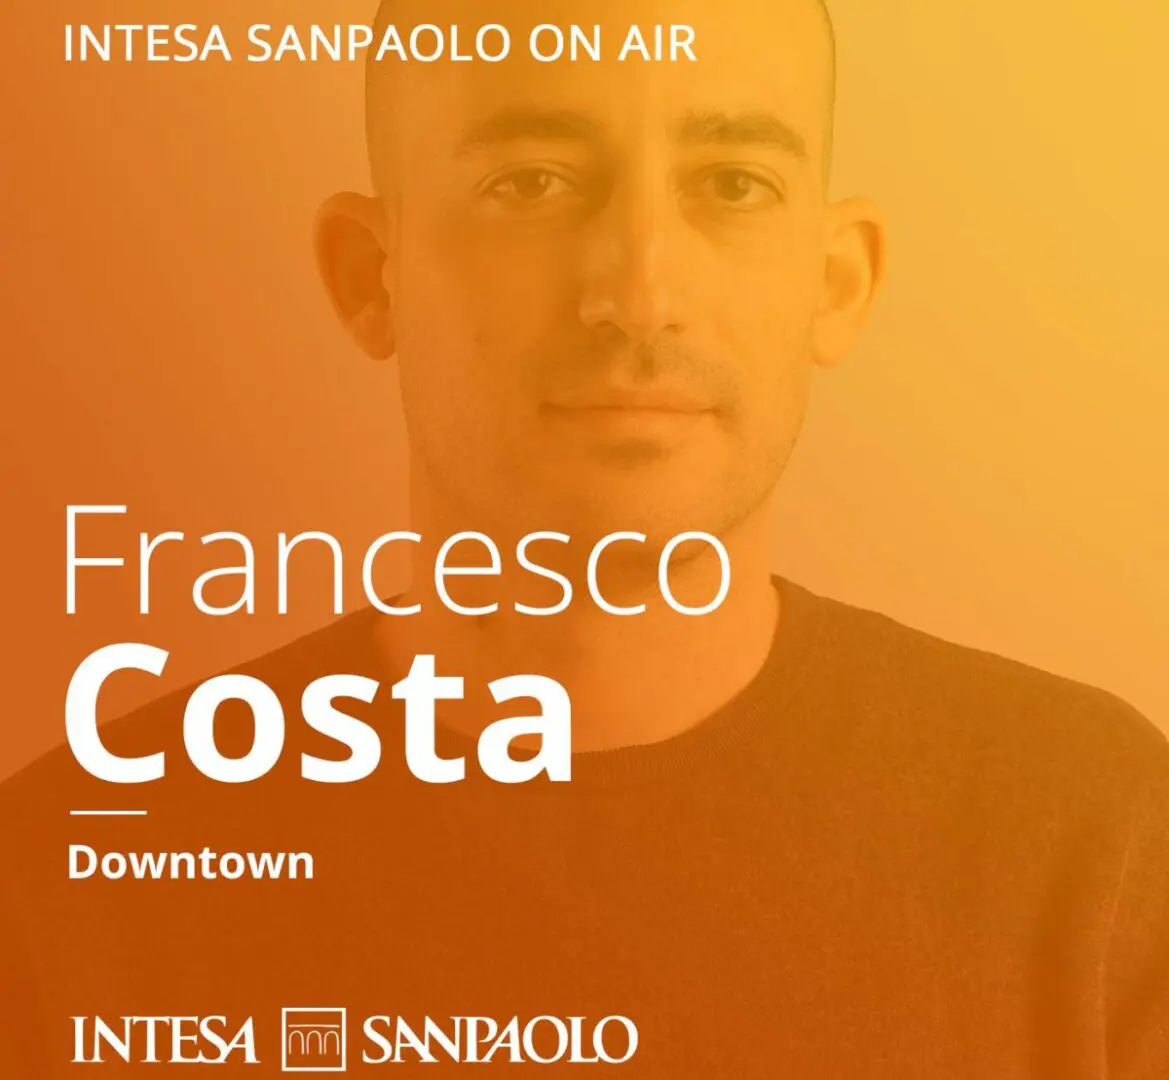 Intesa Sanpaolo, al via “Downtown”, il nuovo podcast di Francesco Costa